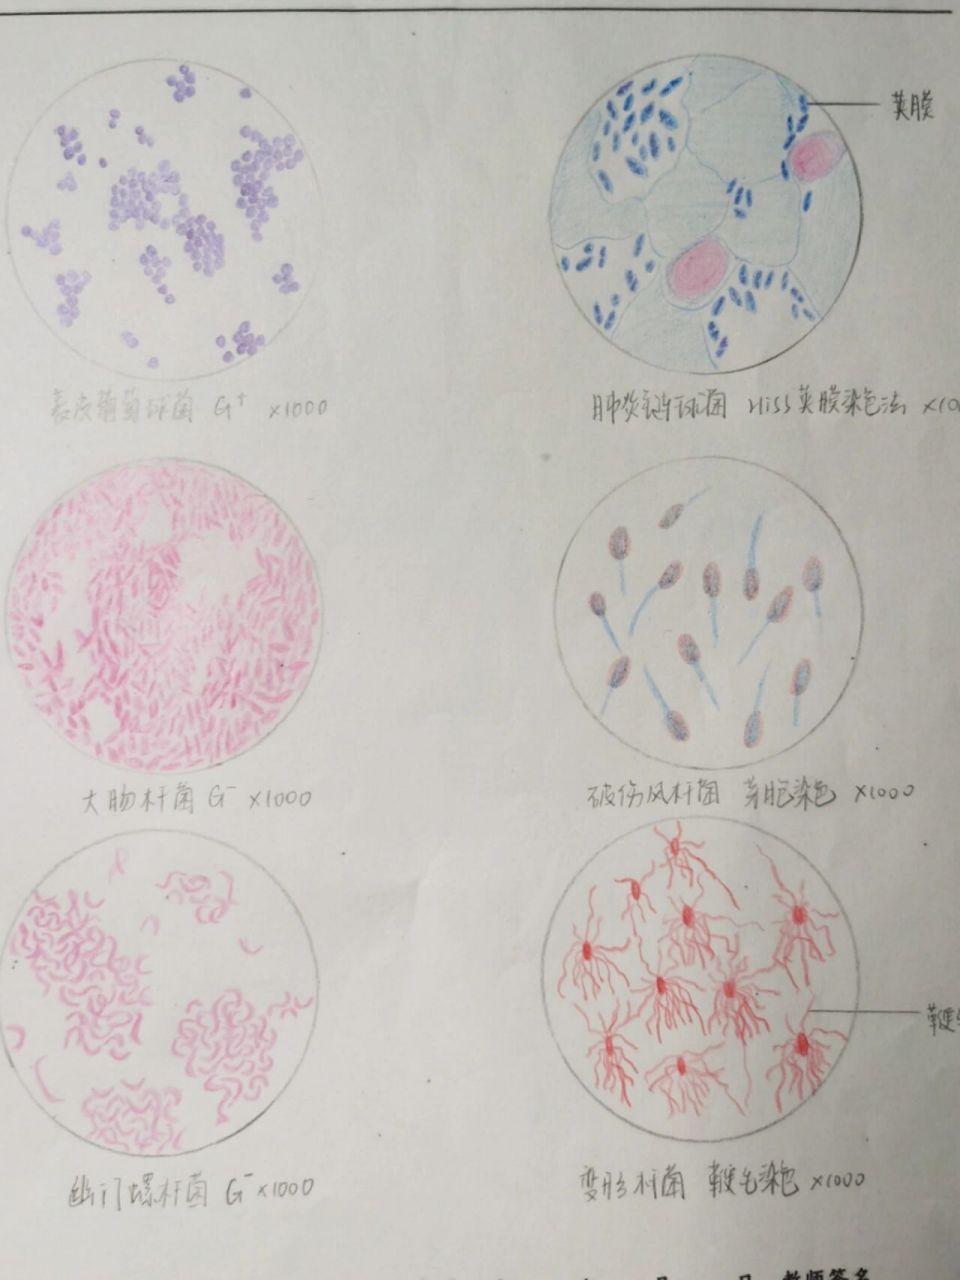 微生物实验红蓝铅笔手绘图 8215表皮葡萄球菌 8215大肠杆菌